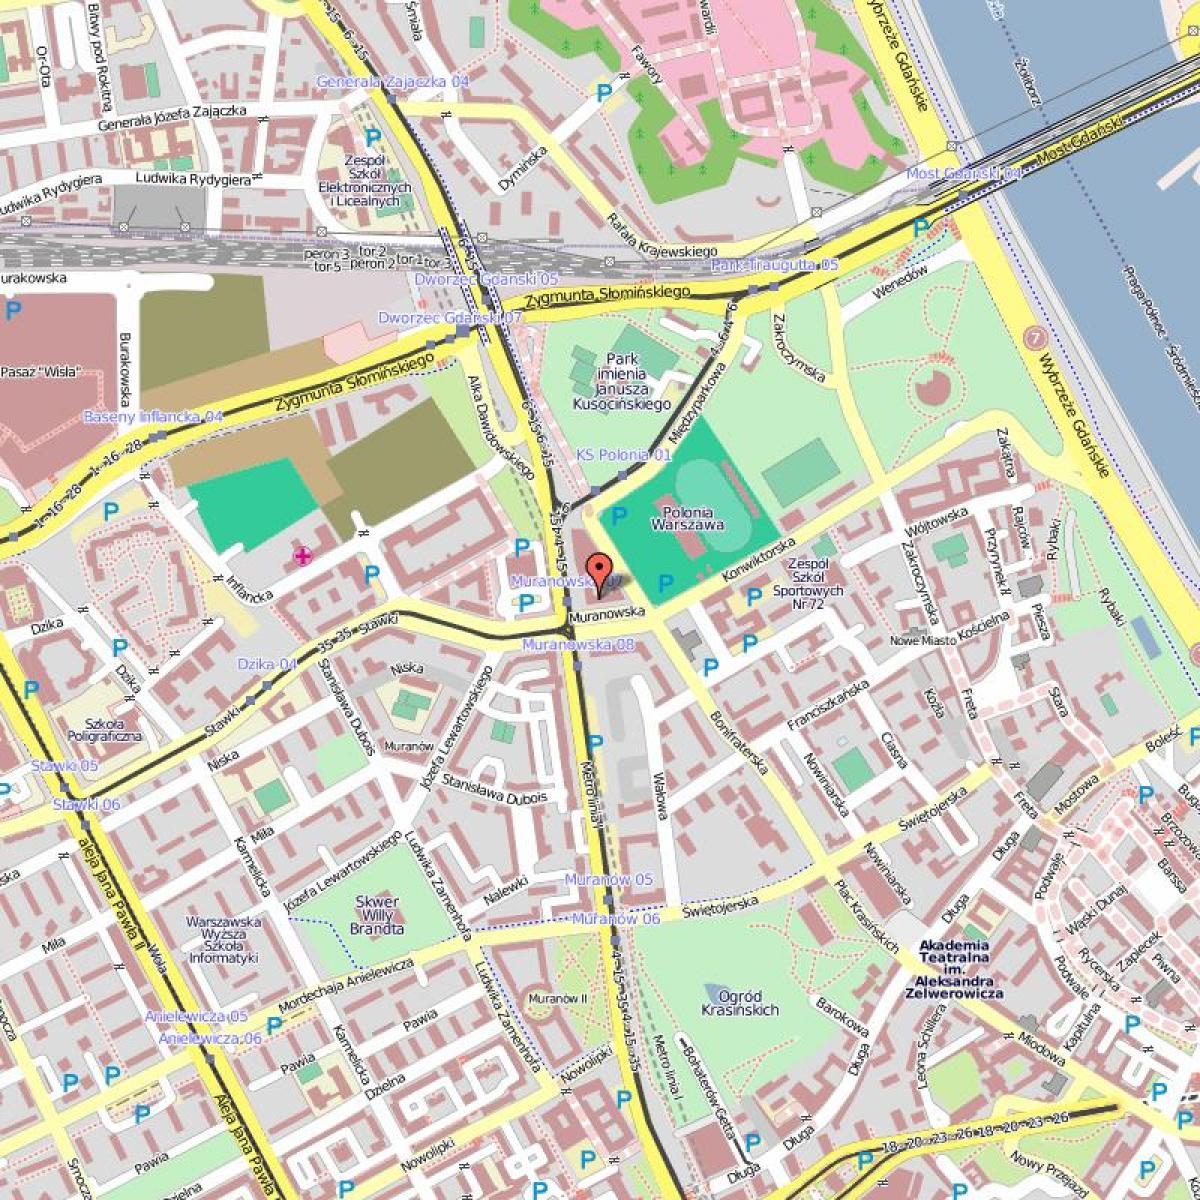 Mappa della città vecchia di Varsavia, polonia